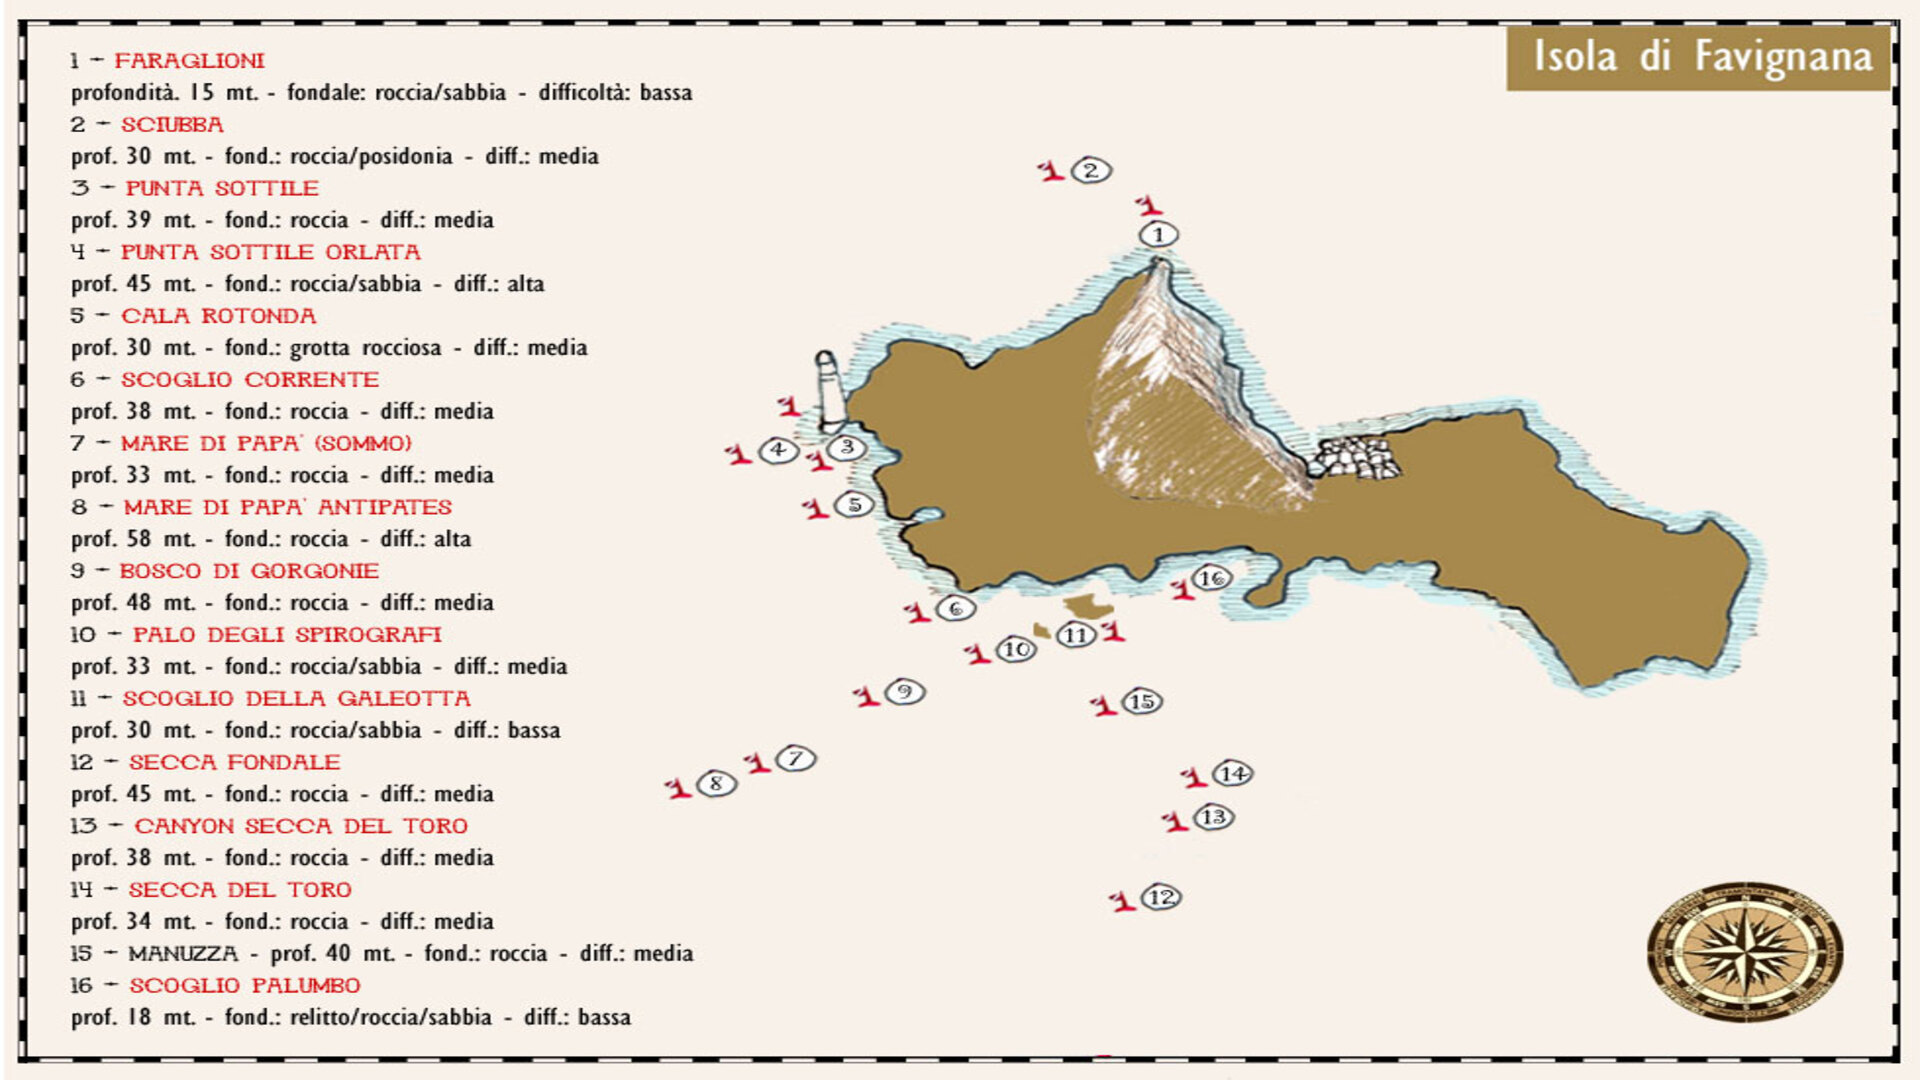 La fotografia mostra i diversi luoghi consigliati per fare delle immersioni sull'isola di Favignana